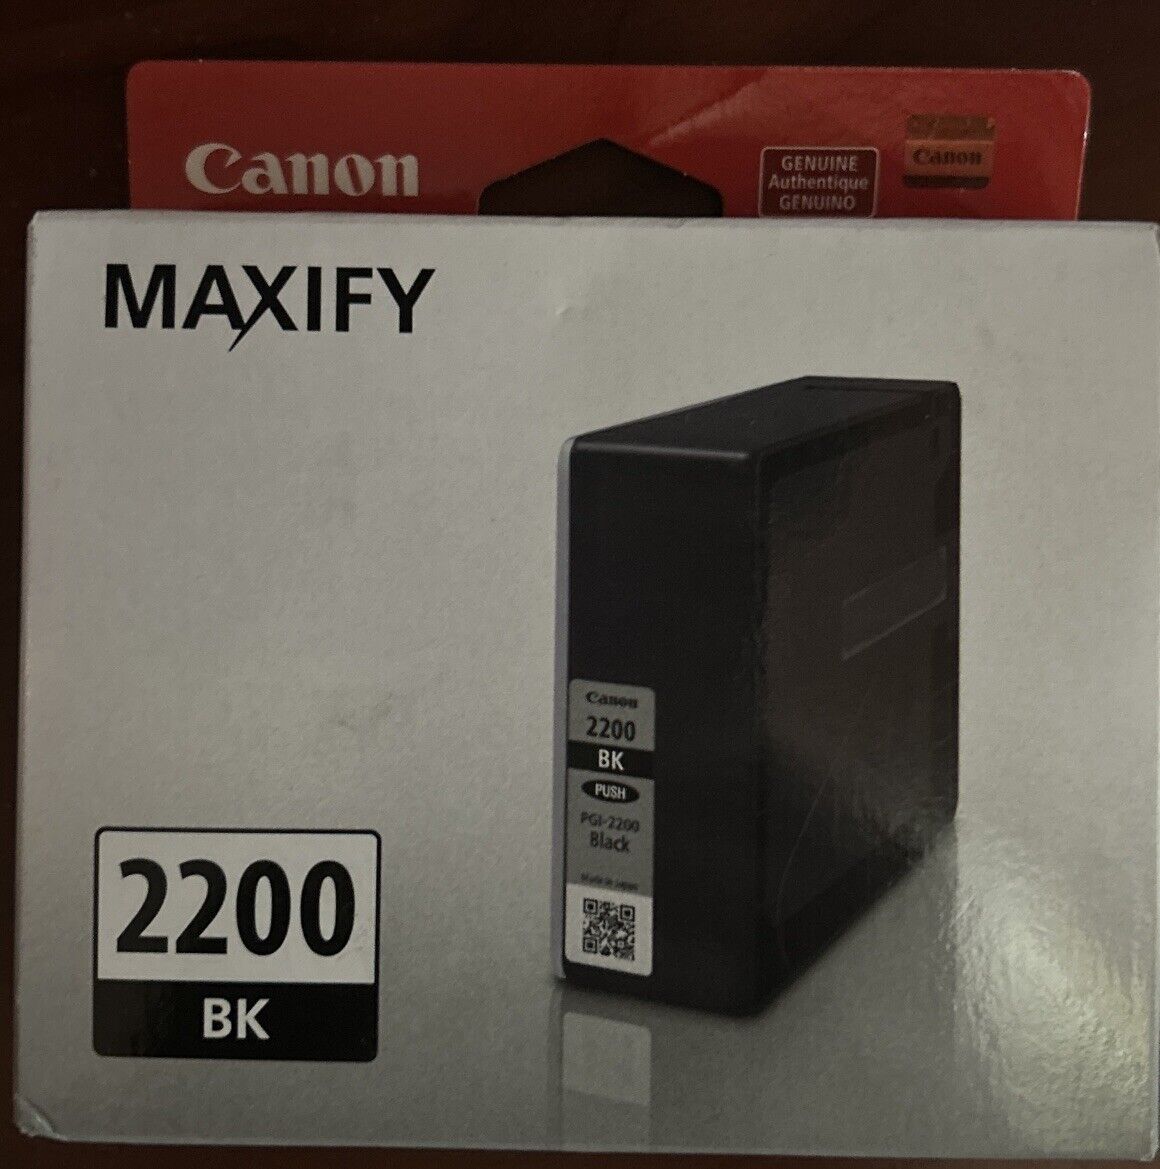 OEM, Canon, Maxify, 2200 Black